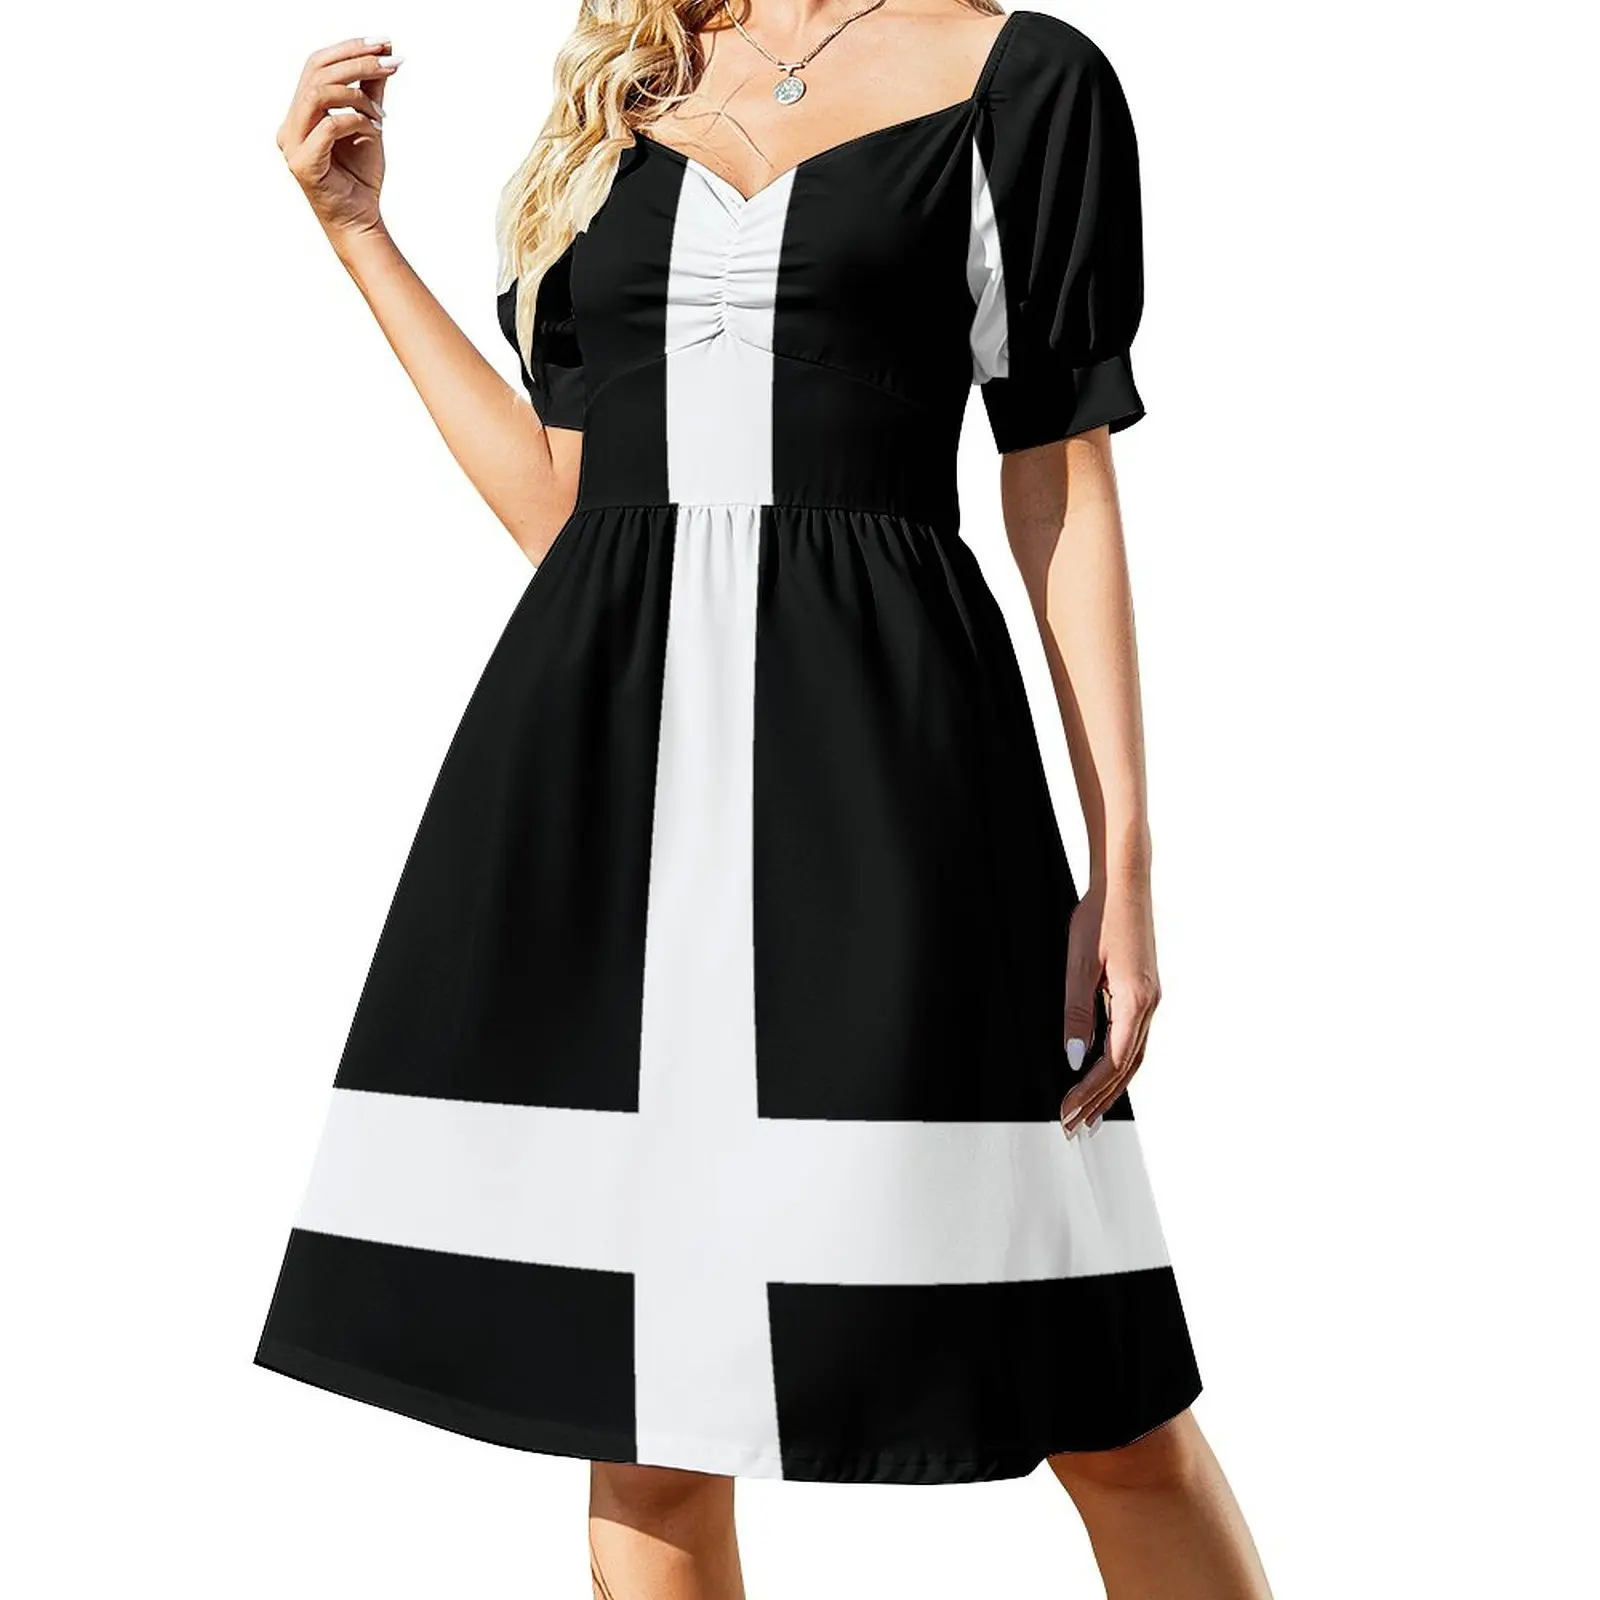 

Mod, White Cross Sleeveless Dress elegant dresses plus sizes long dress women